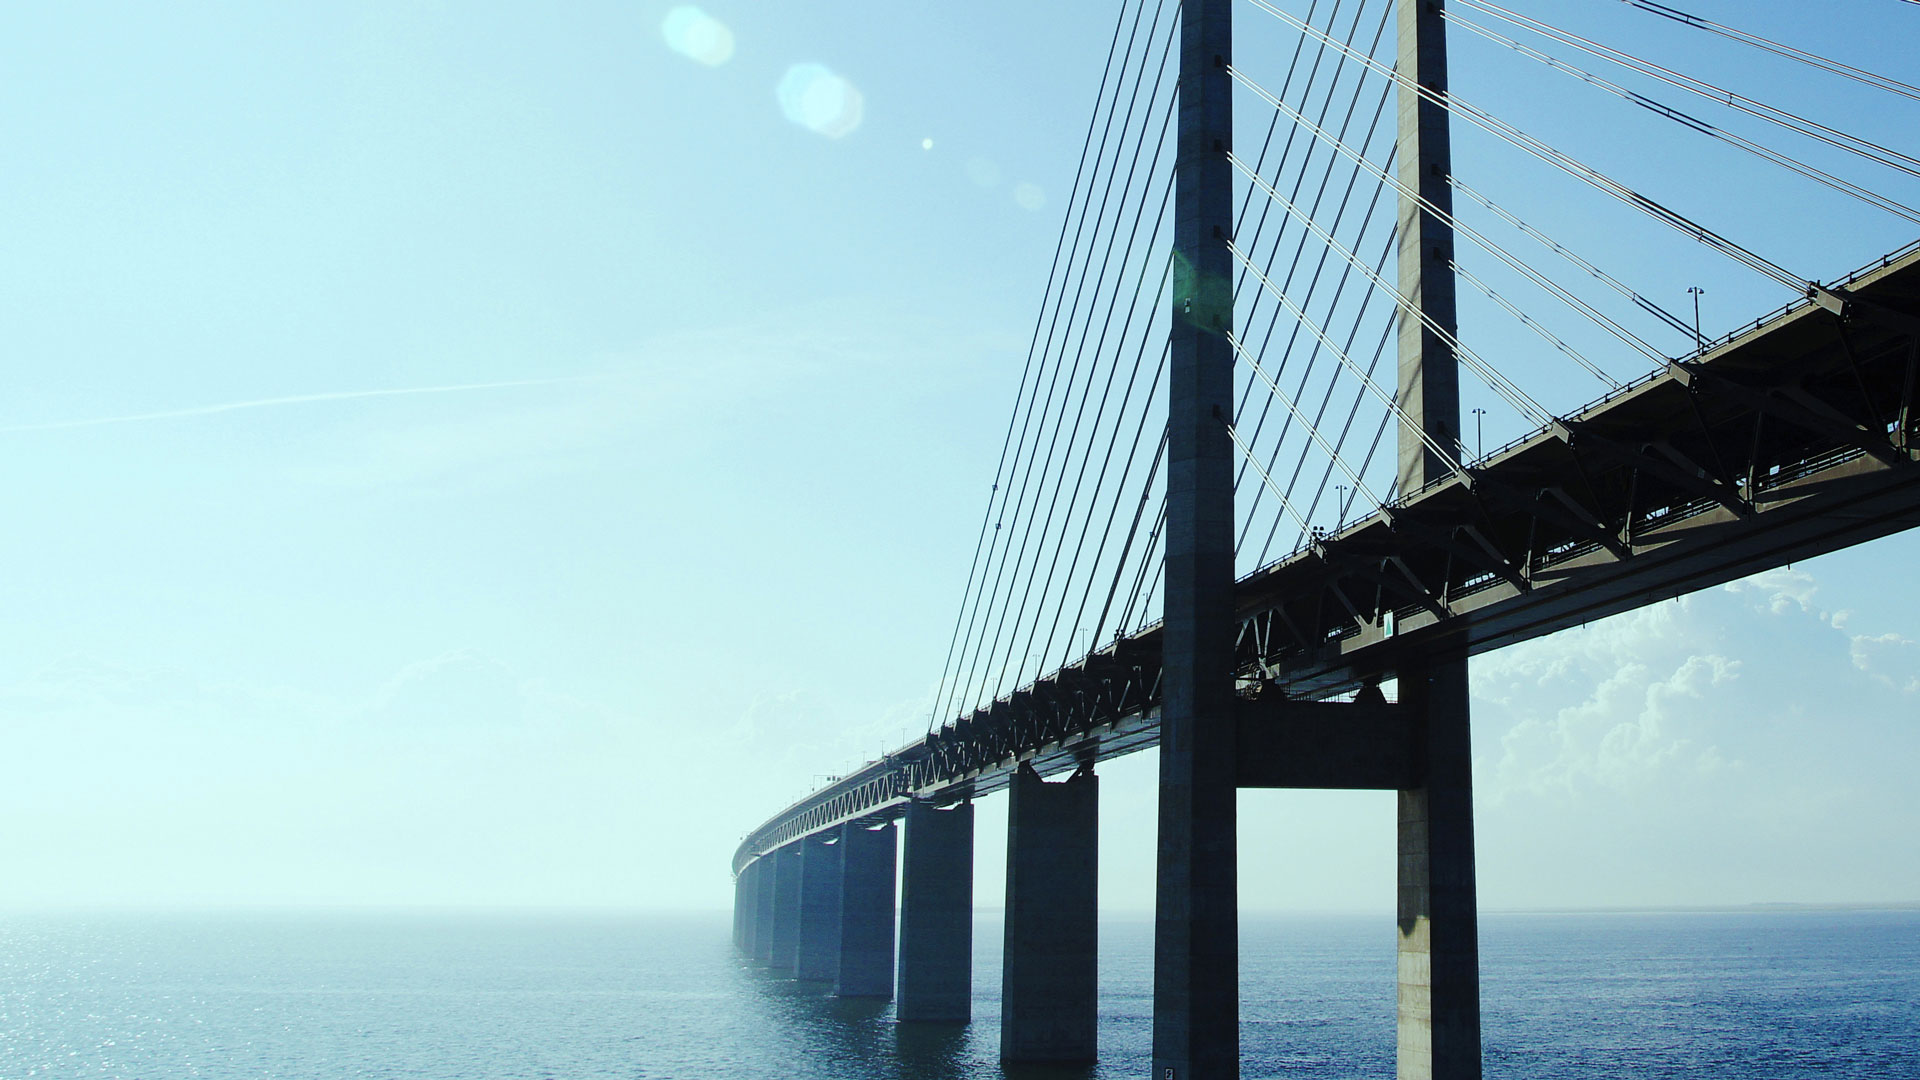 Сталь SSAB Weathering для мостов и инженерных конструкций